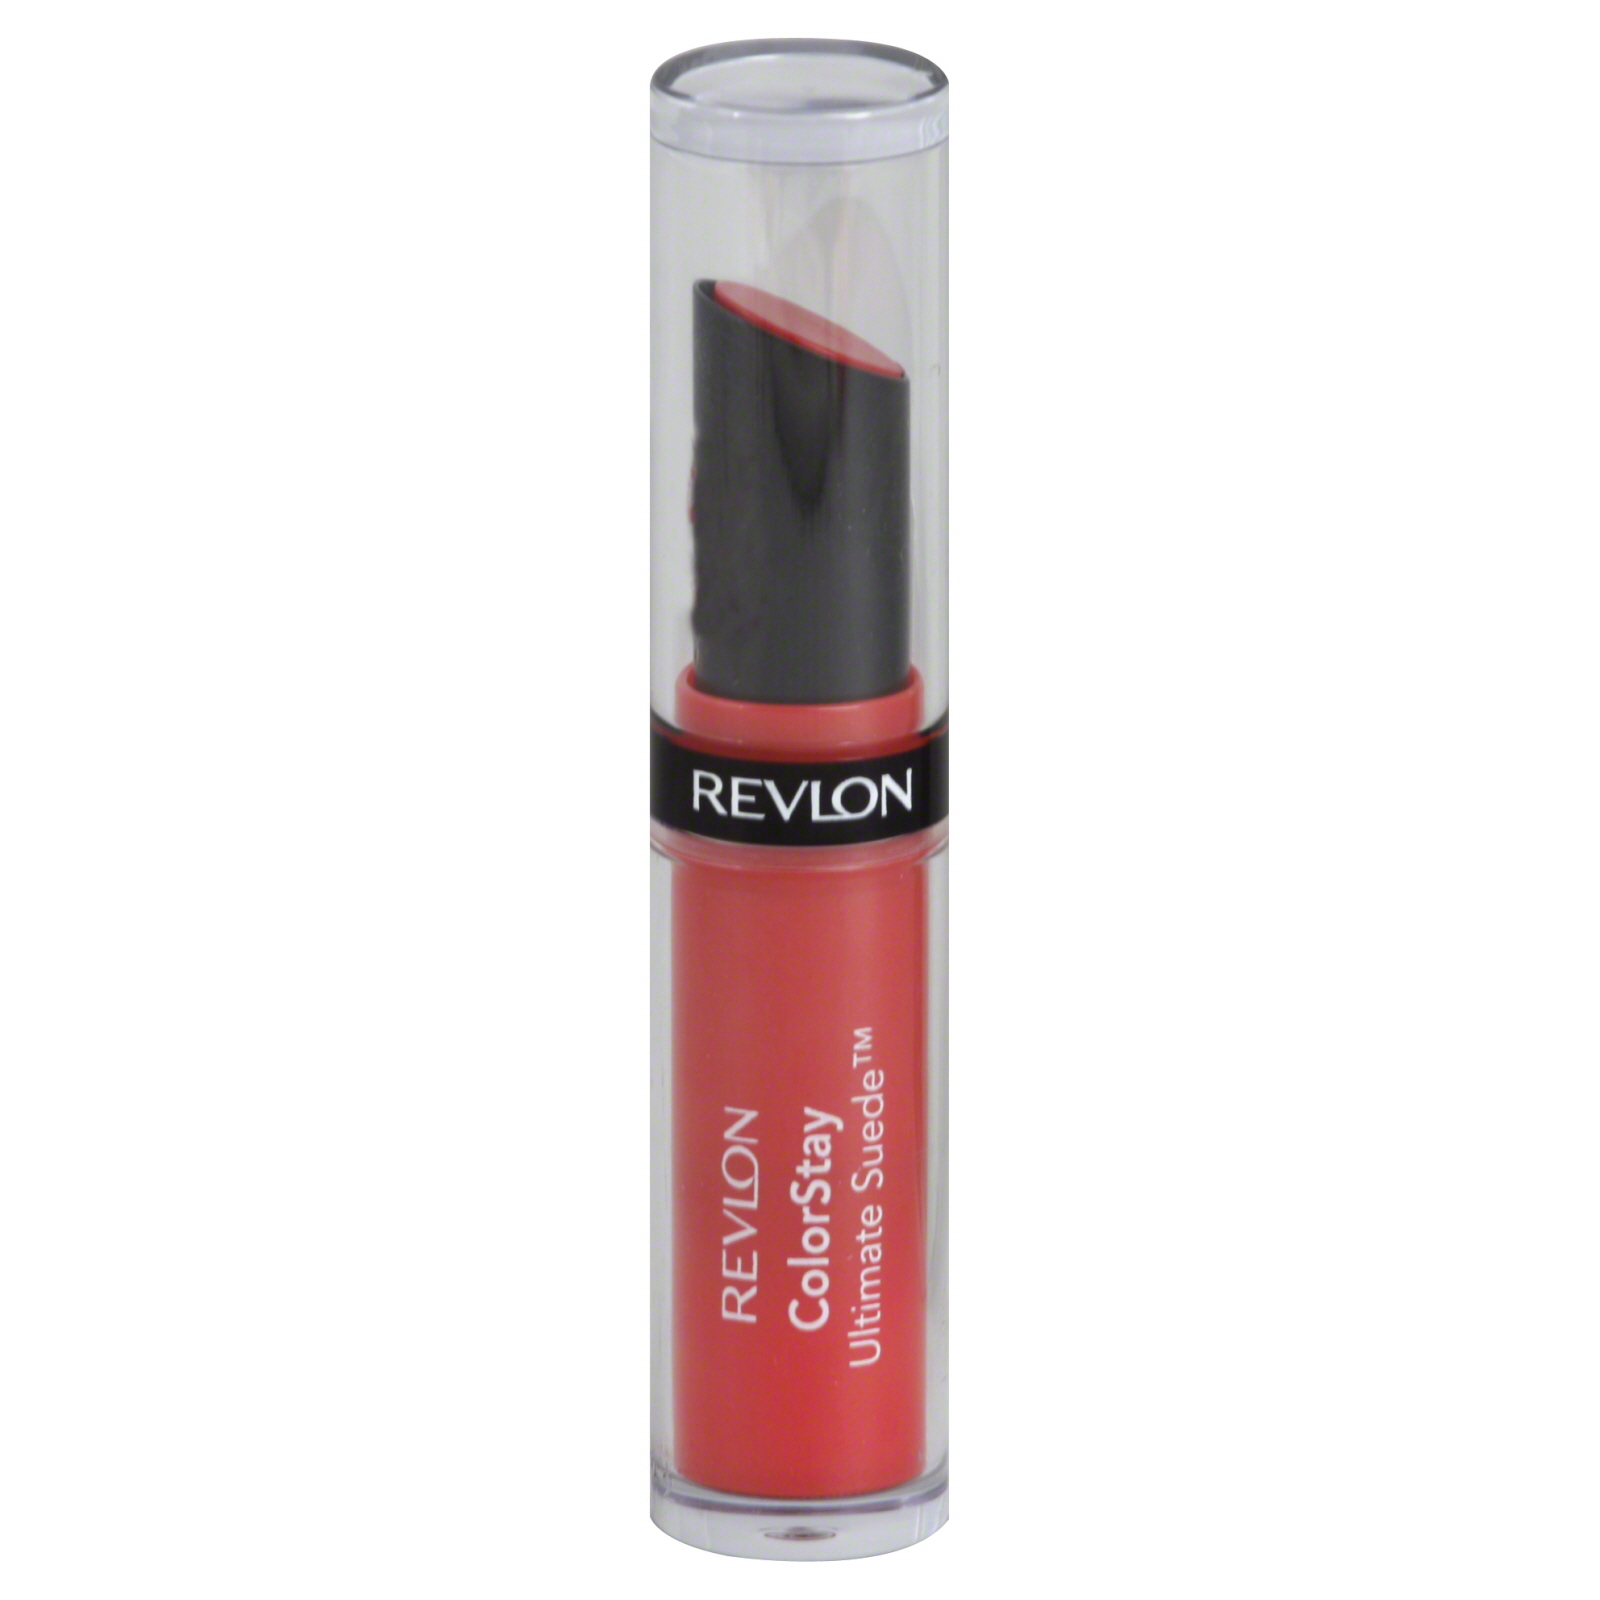 Revlon Colorstay Ultimate Suede Longwear Lipstick